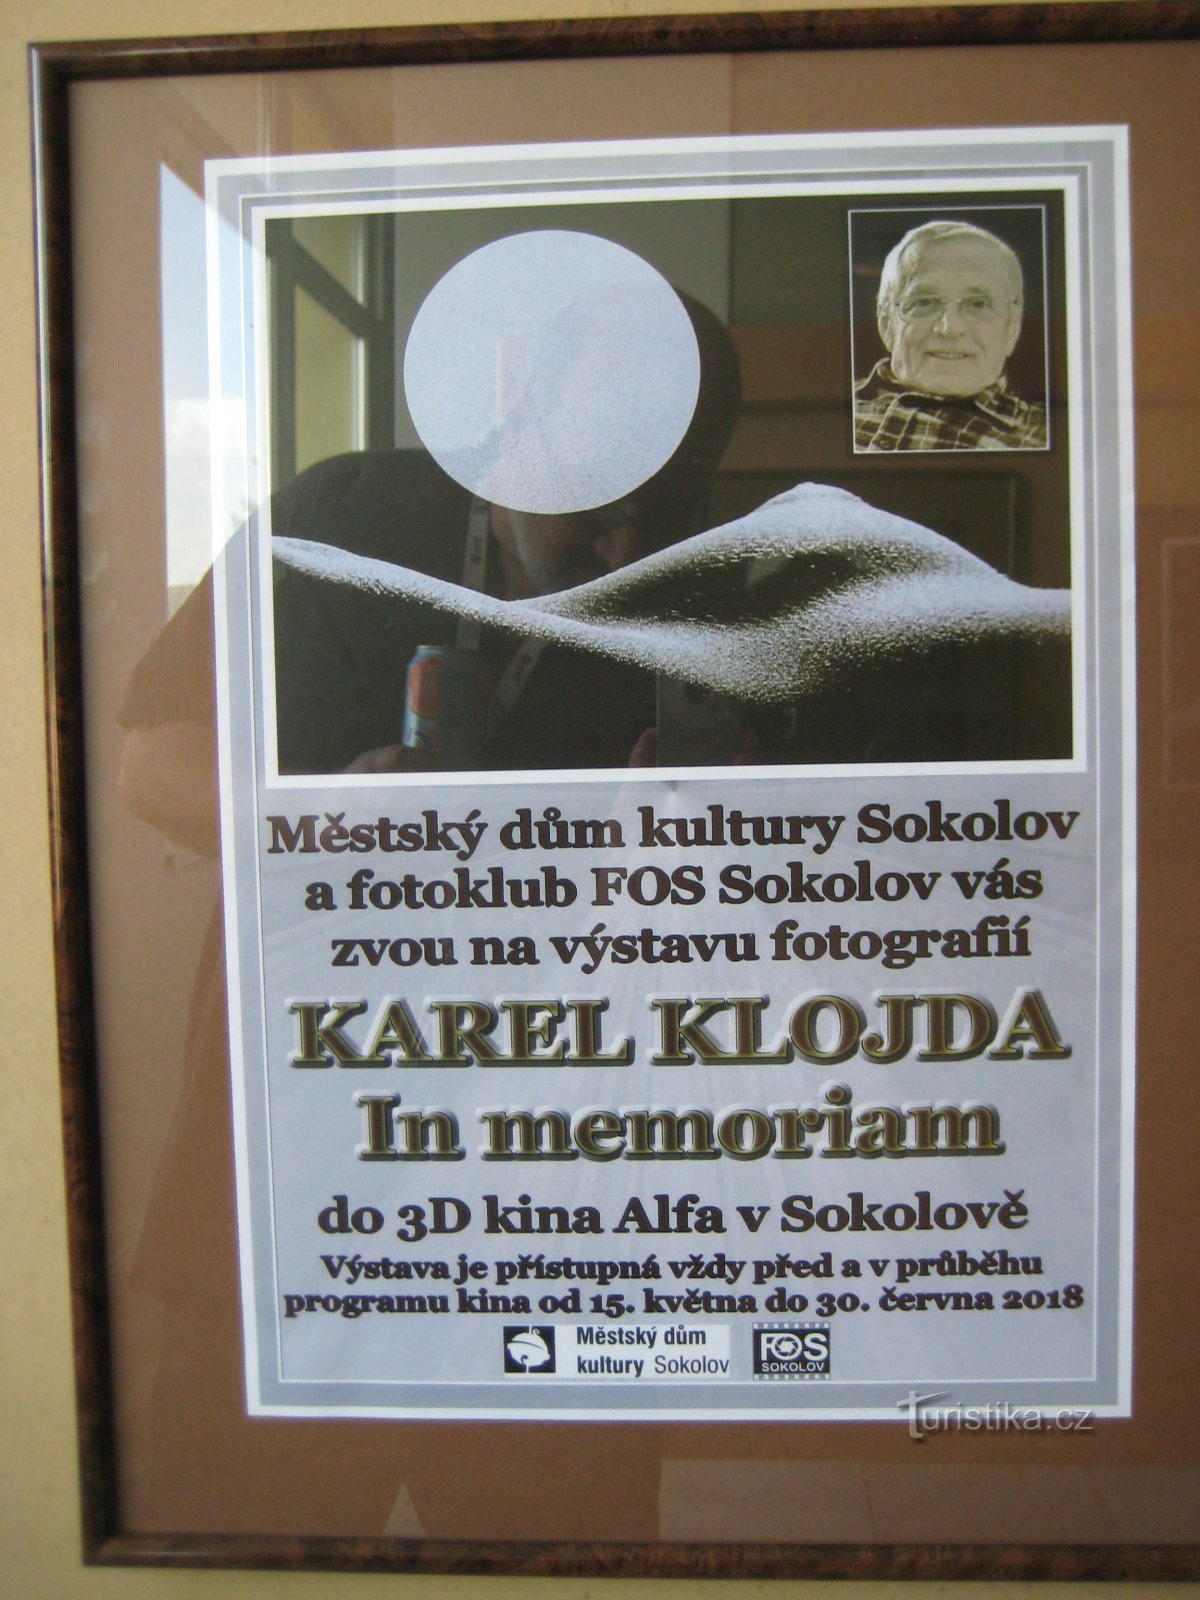 Karel Klojda - In memoriam - Sokolov